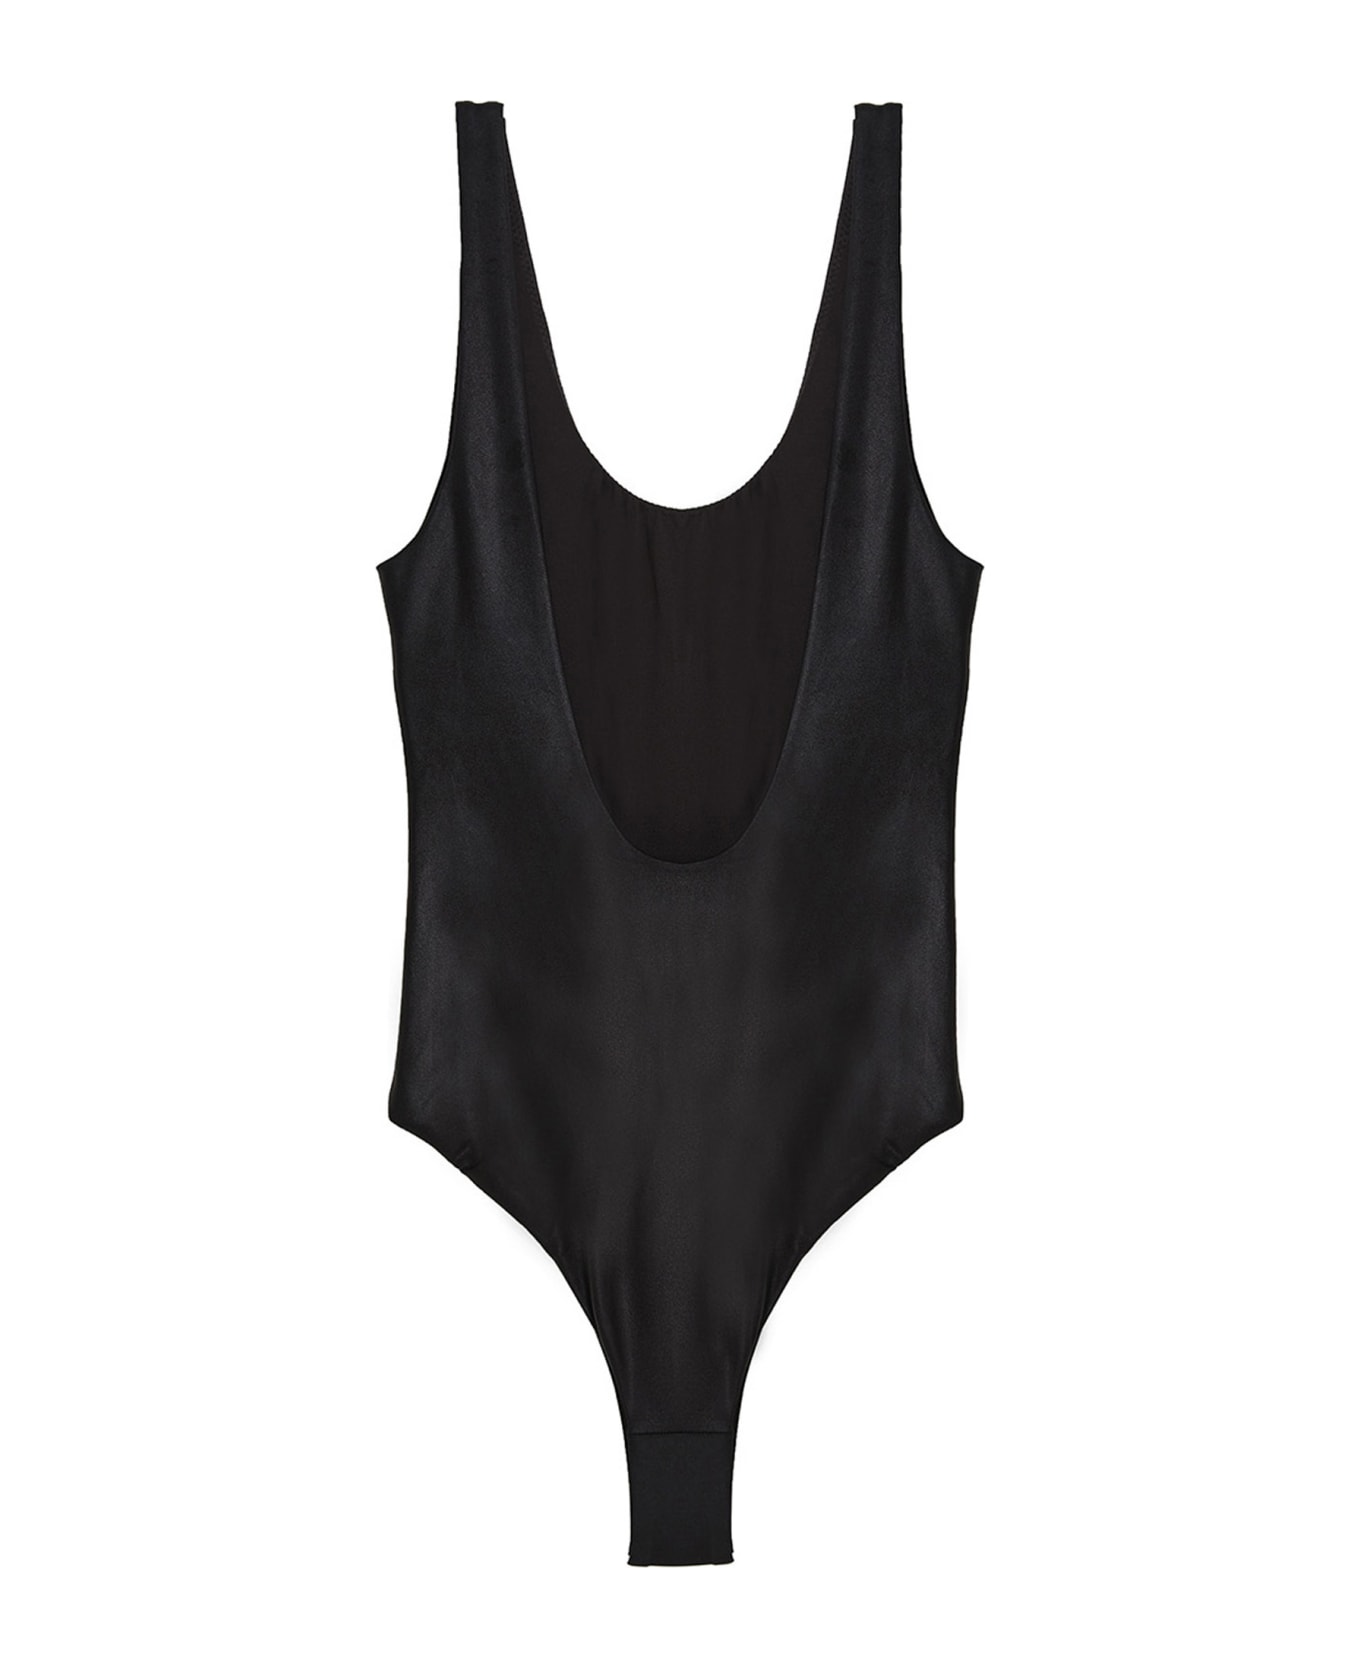 Rotate by Birger Christensen 'cismione' Swimsuit - Black  